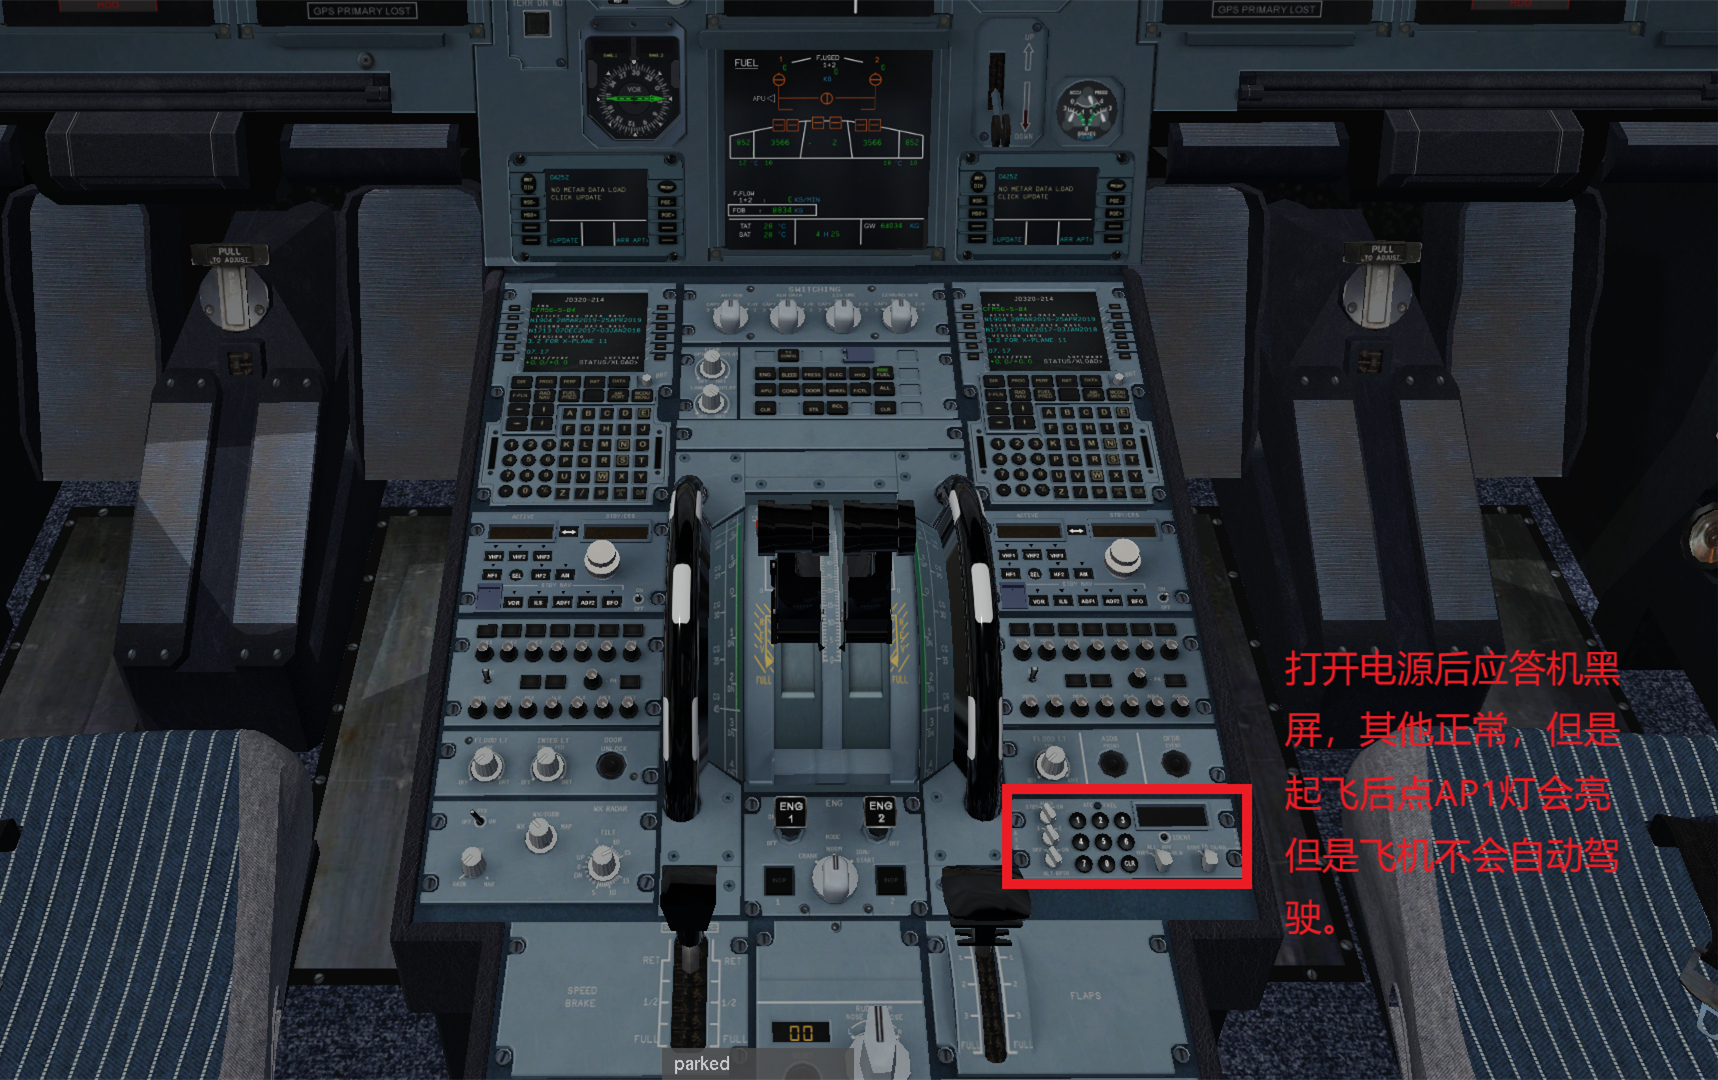 JARD A320  不能导航应答机黑屏的解决办法-4358 